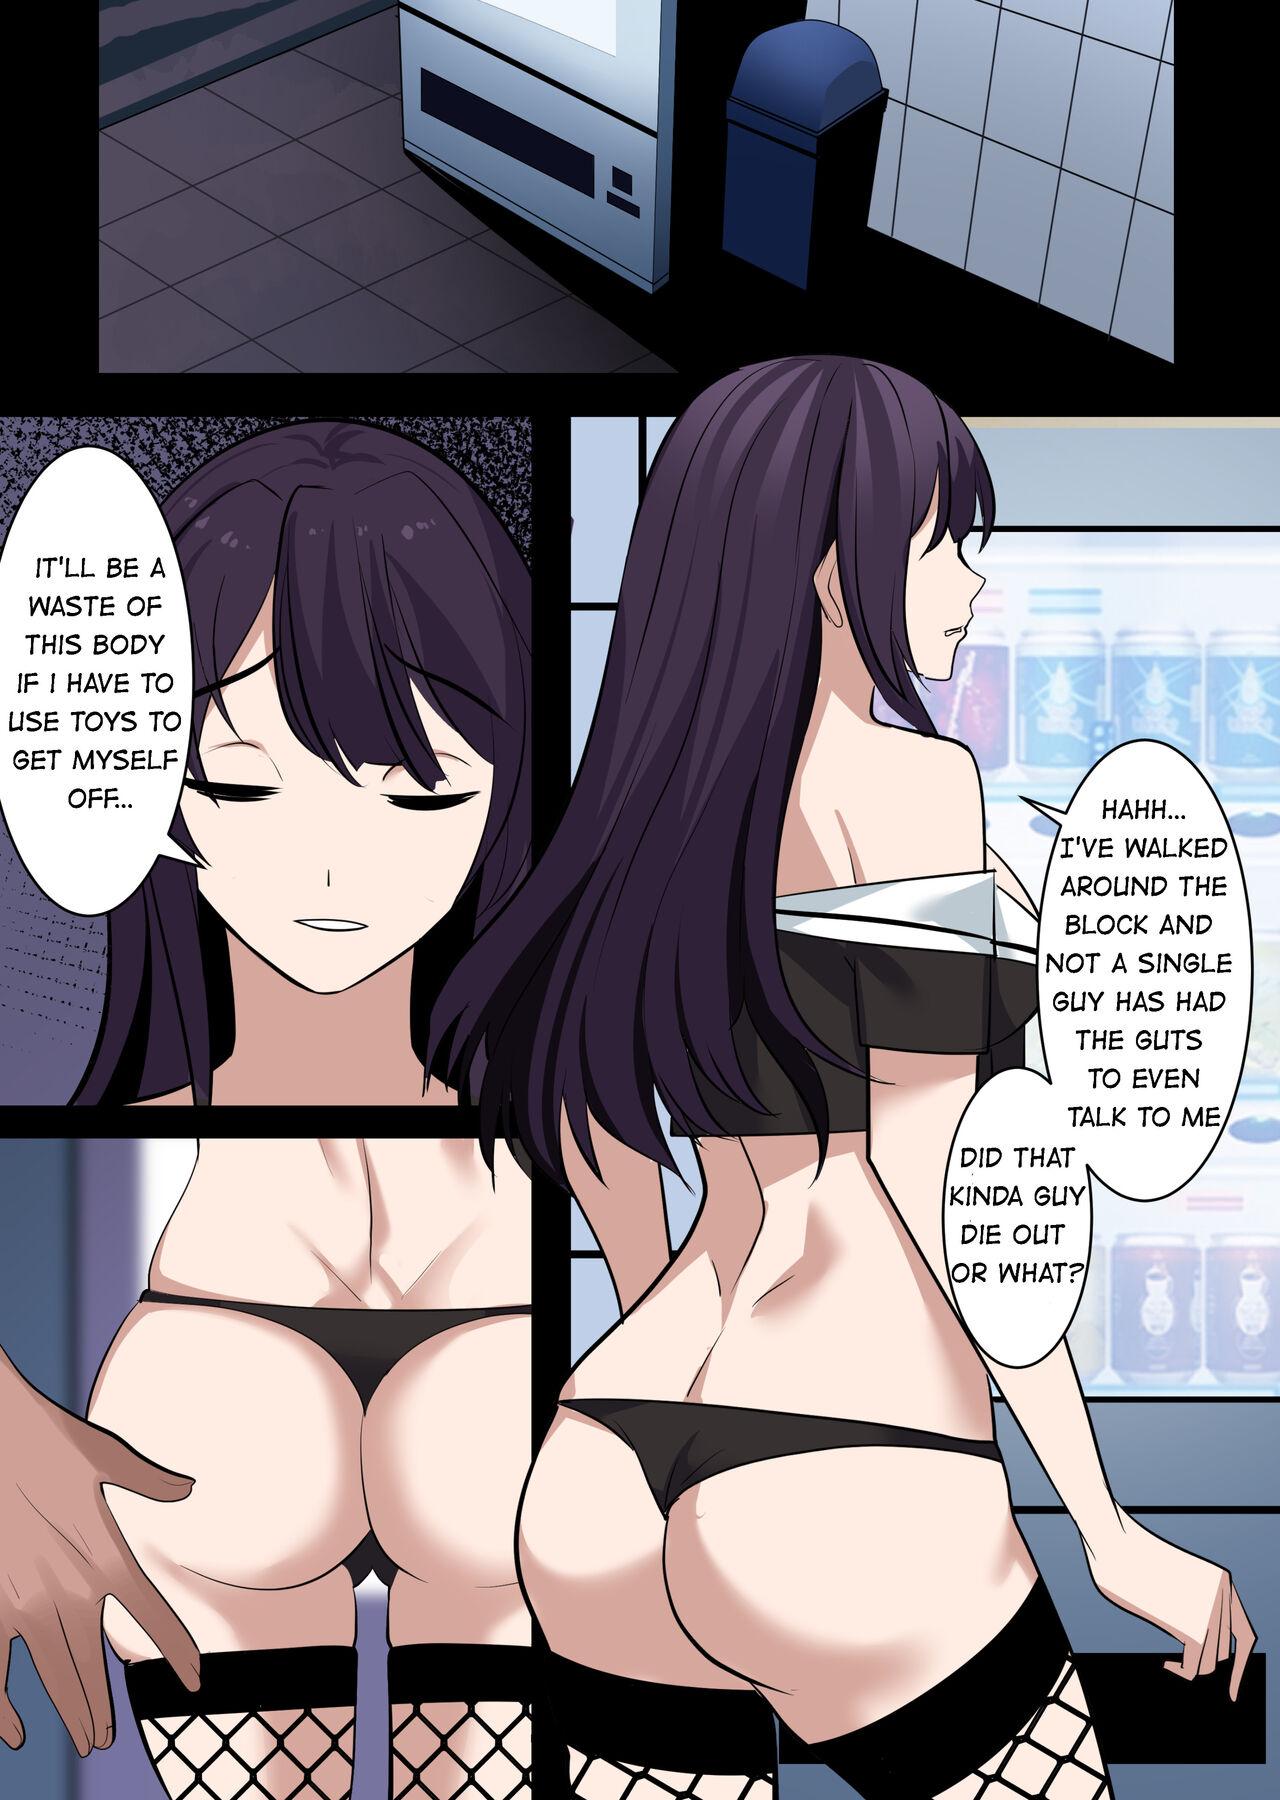 Fucking Possessing Sakurajima Mai and Cucking Her Lover - Seishun buta yarou wa bunny girl senpai no yume o minai Fishnet - Page 7